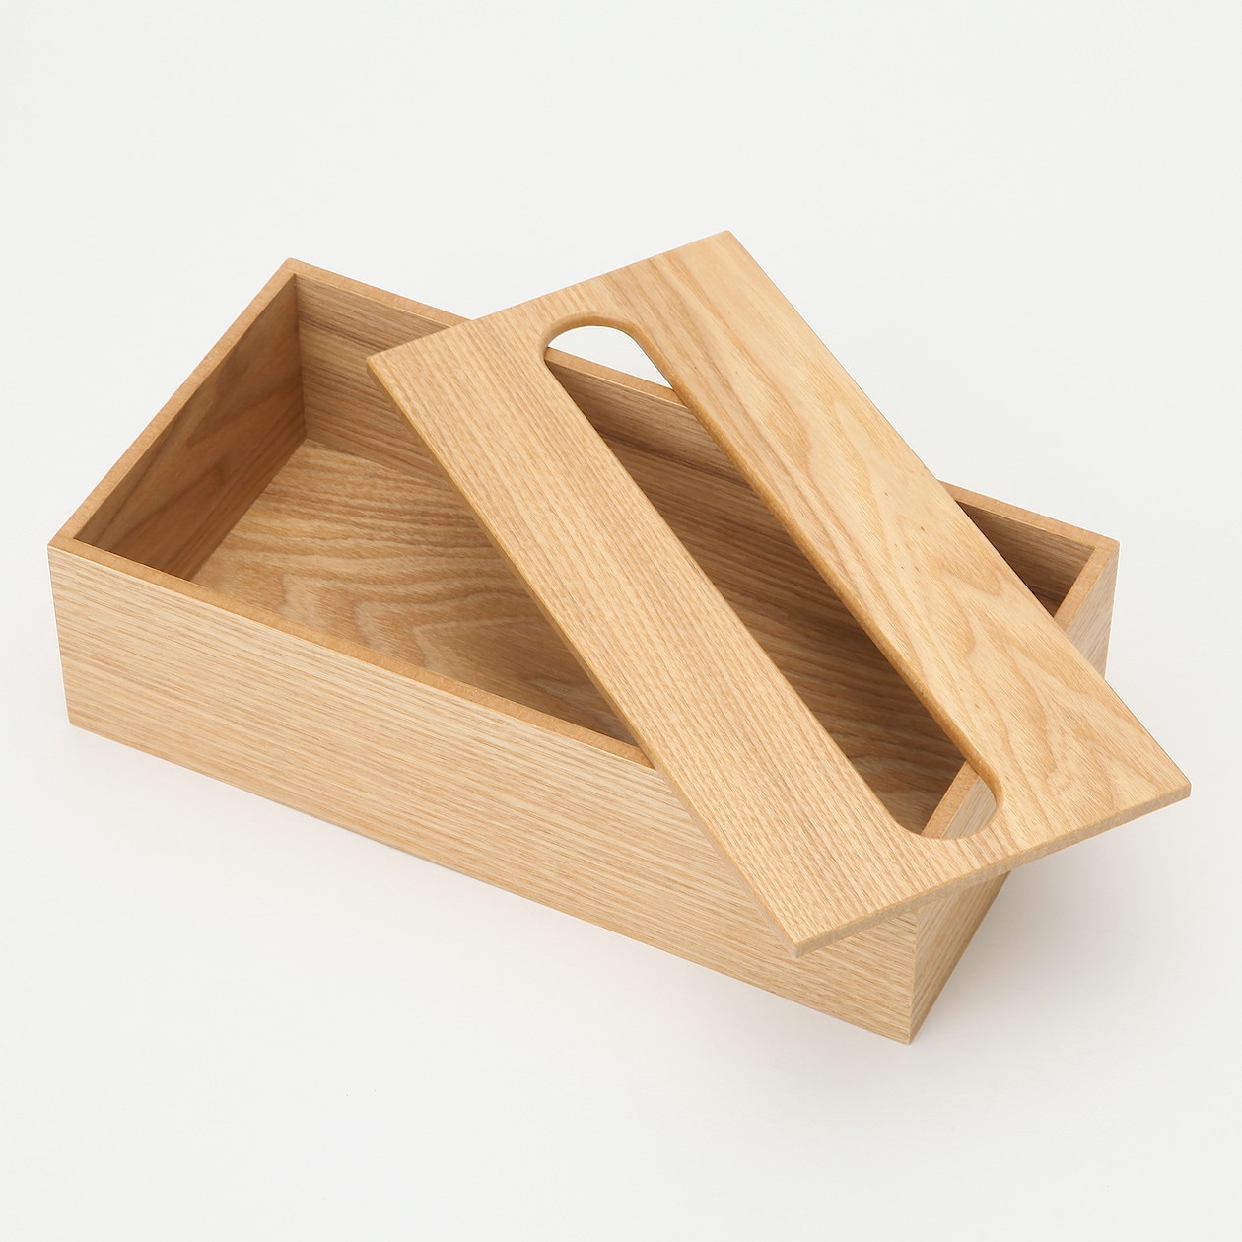 無印良品(MUJI) 木製ティシューボックスの商品画像3 